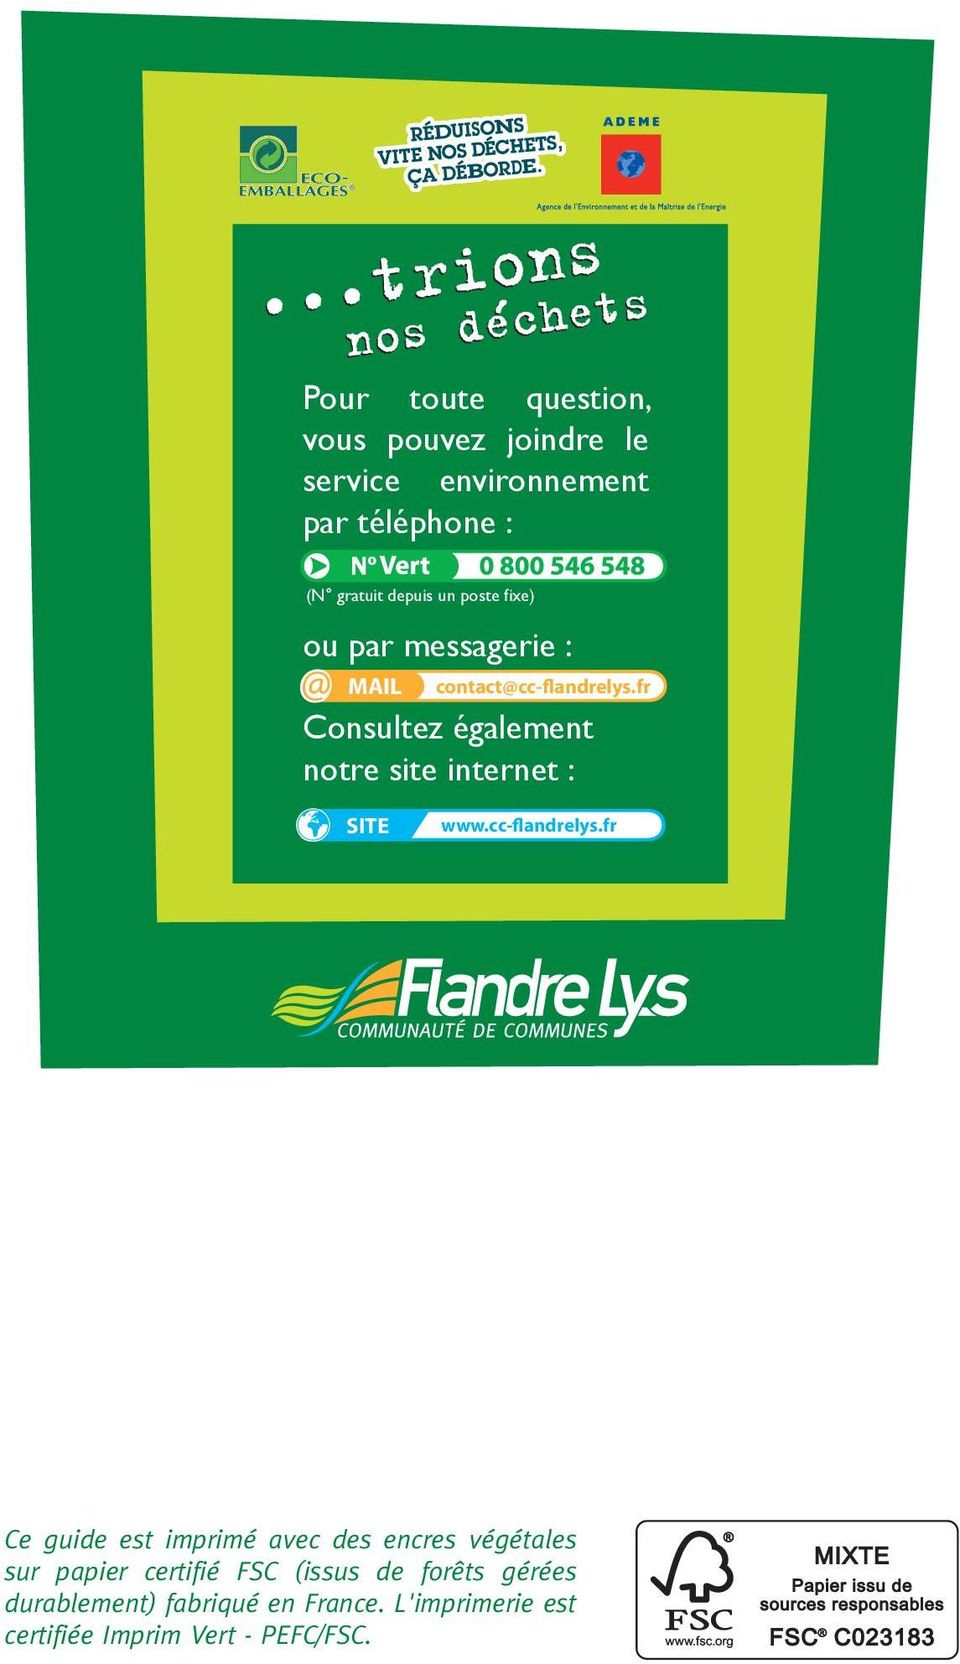 fr Consultez également notre site internet : SITE www.cc-flandrelys.